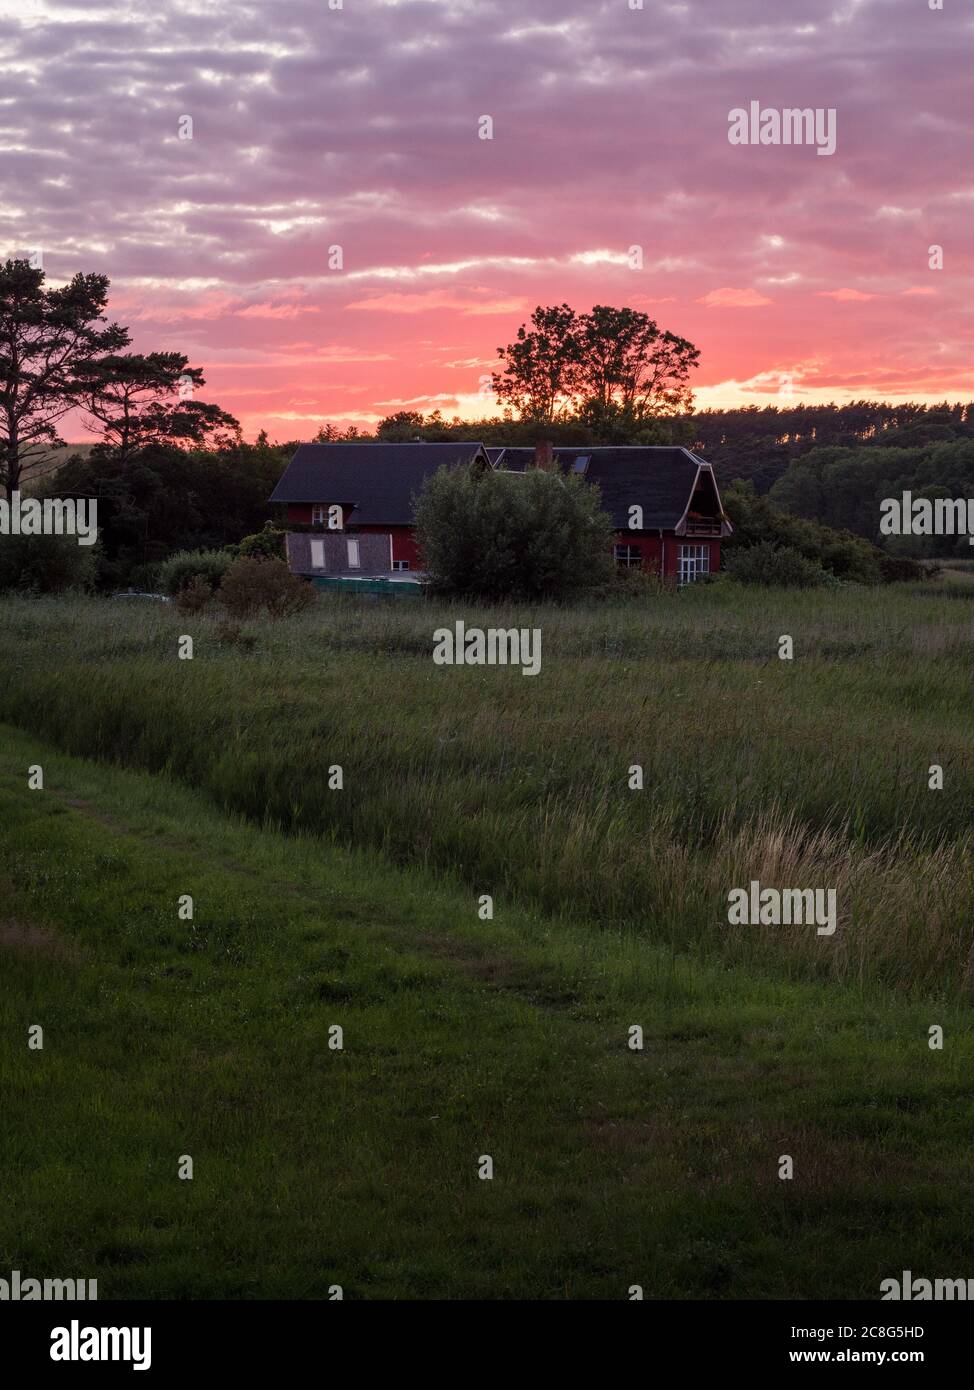 Sonnenuntergang Sonnenaufgang auf einem Getreidefeld auf der Insel Rügen mit einer Farm, Bäumen, Strohballen, roten Mohnblumen nach einem Gewitter Foto de stock